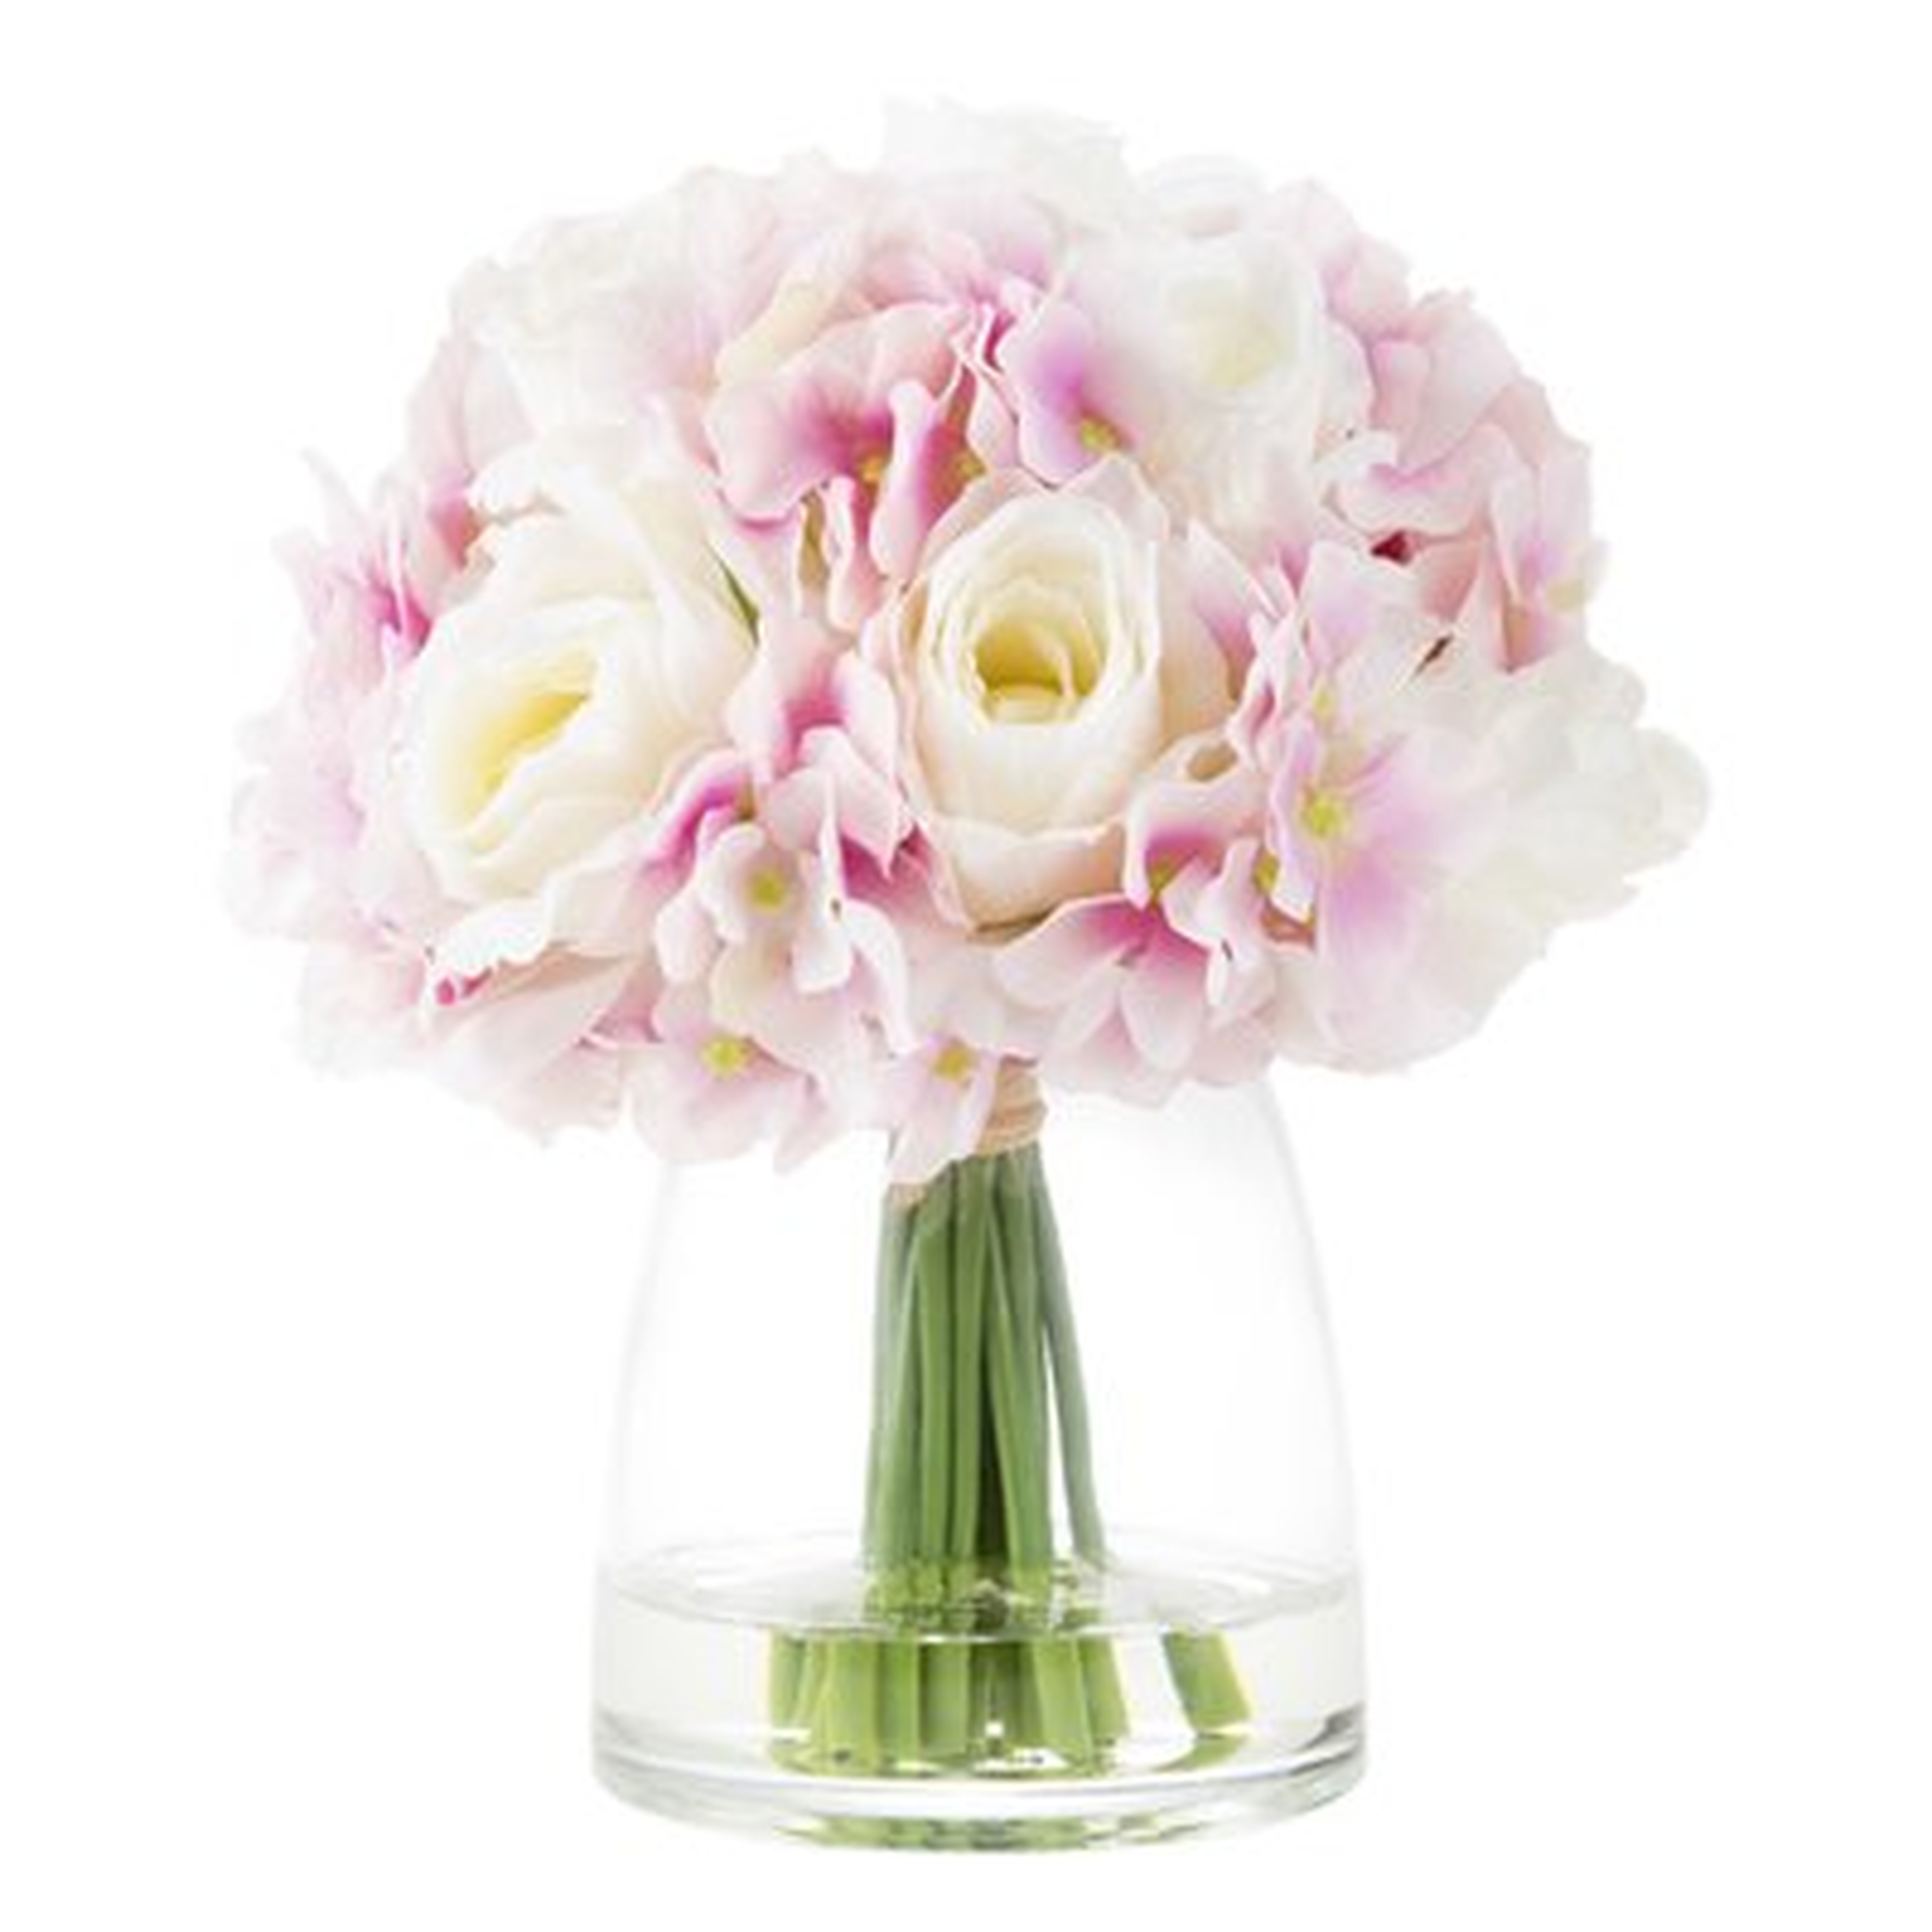 Hydrangea and Rose Floral Arrangement in Glass Vase - Birch Lane